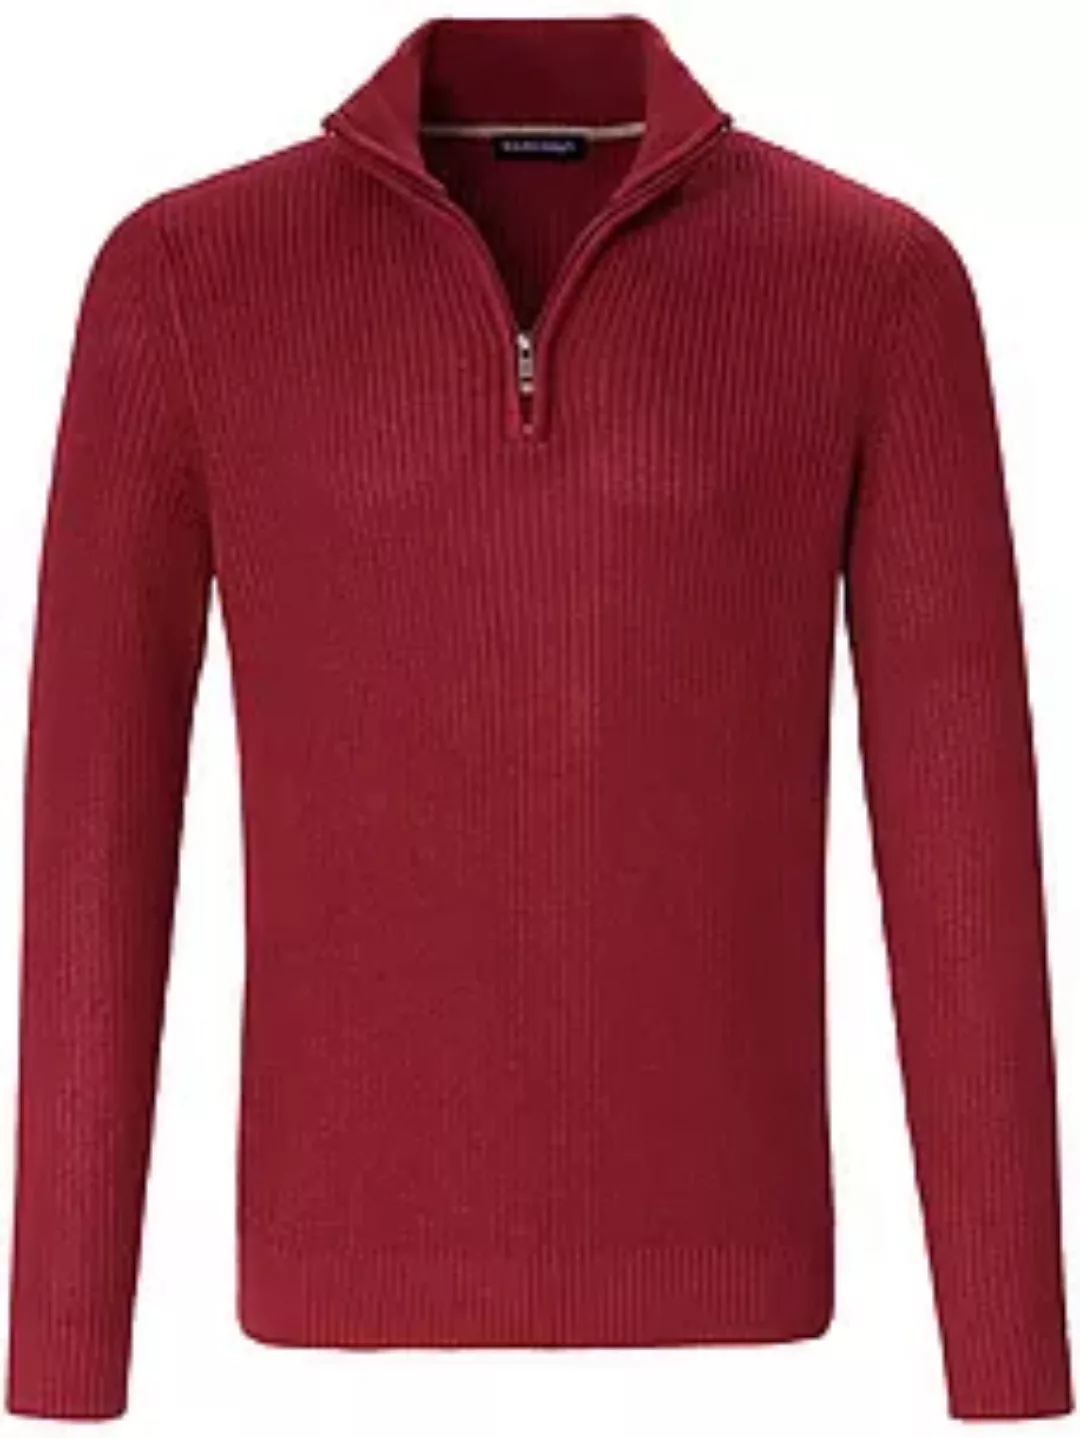 Pullover Stehbundkragen Louis Sayn rot günstig online kaufen